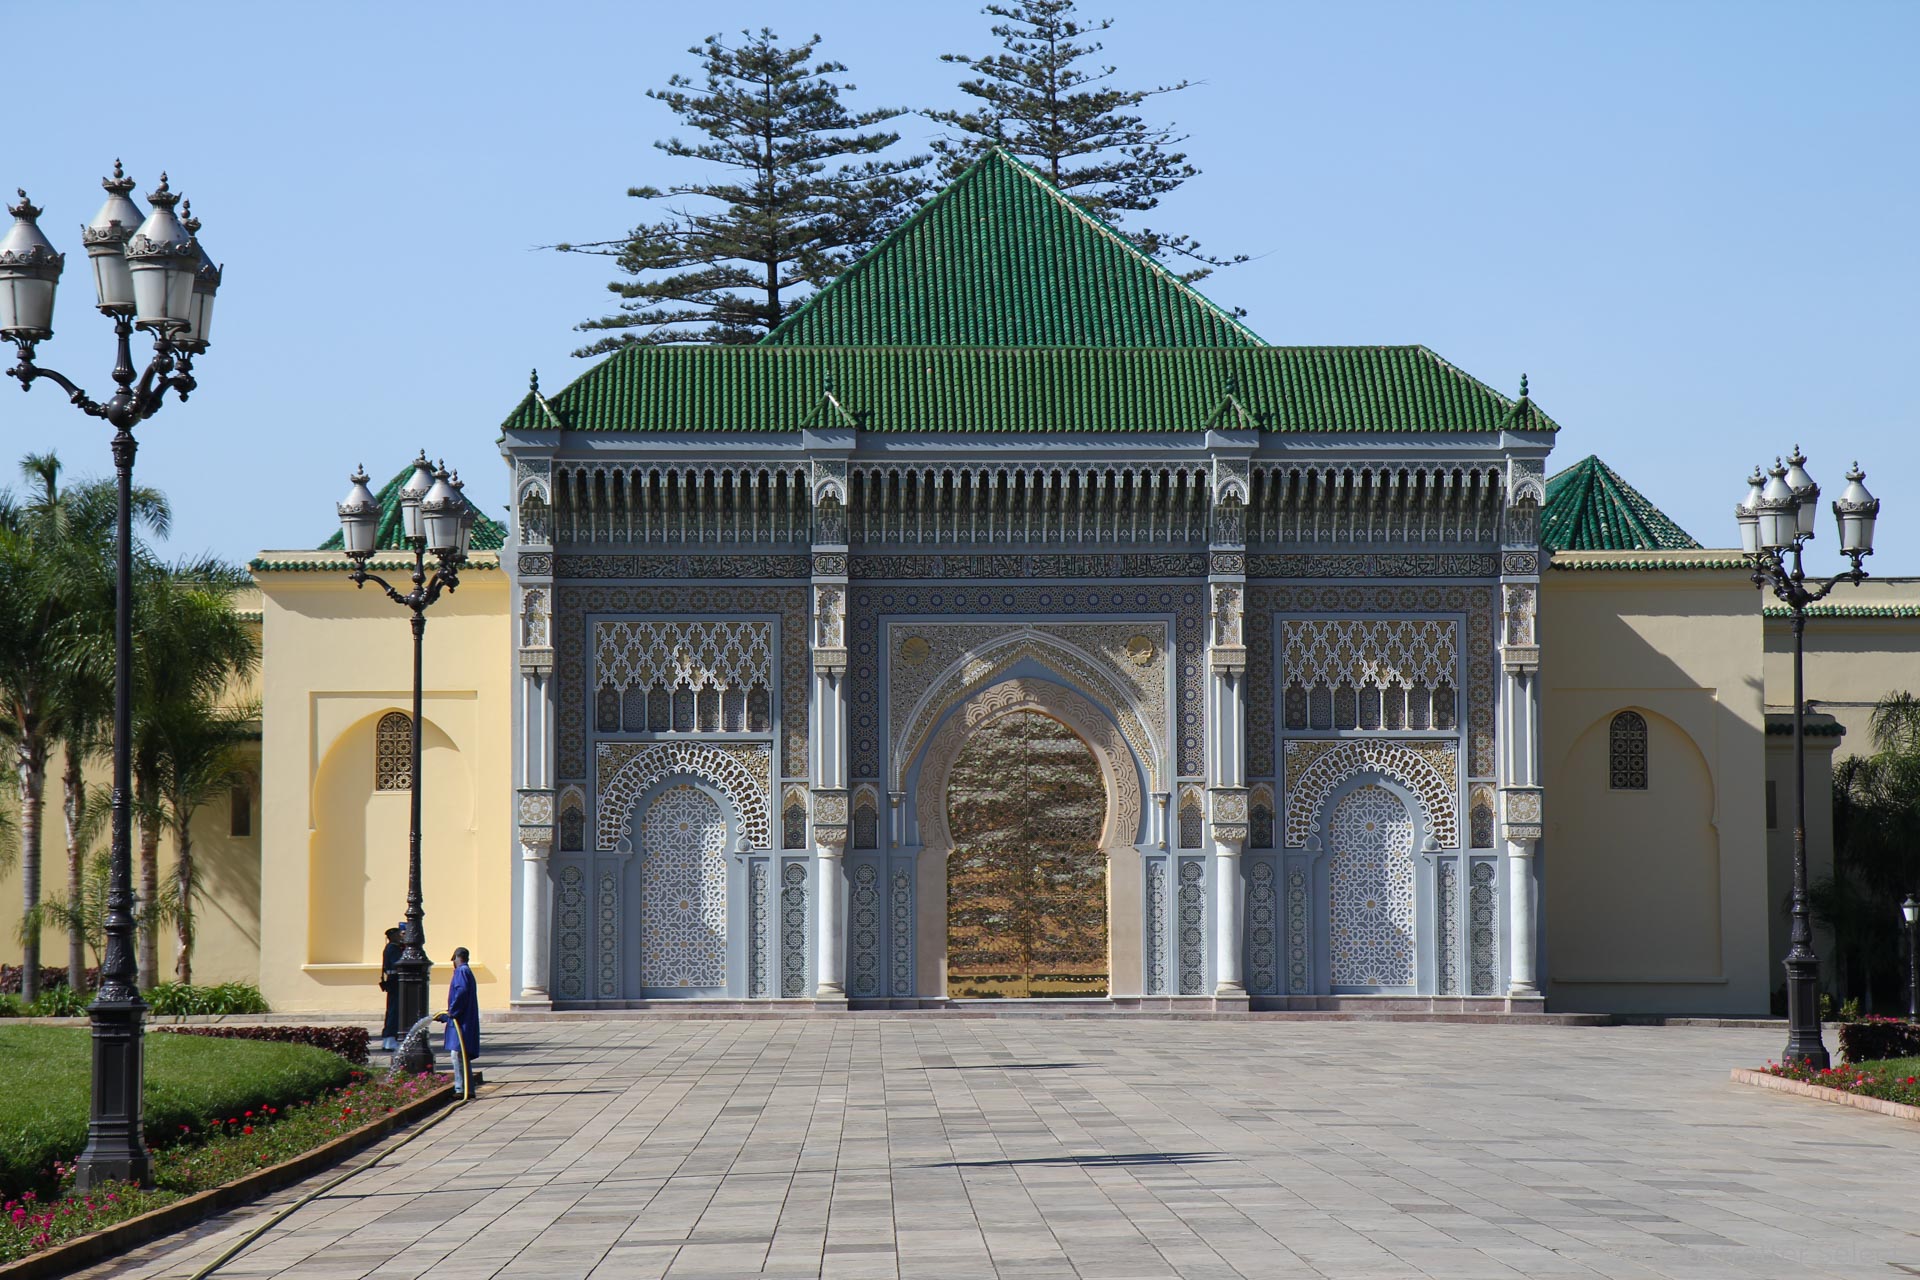 Hauptstadt Rabat in Marokko